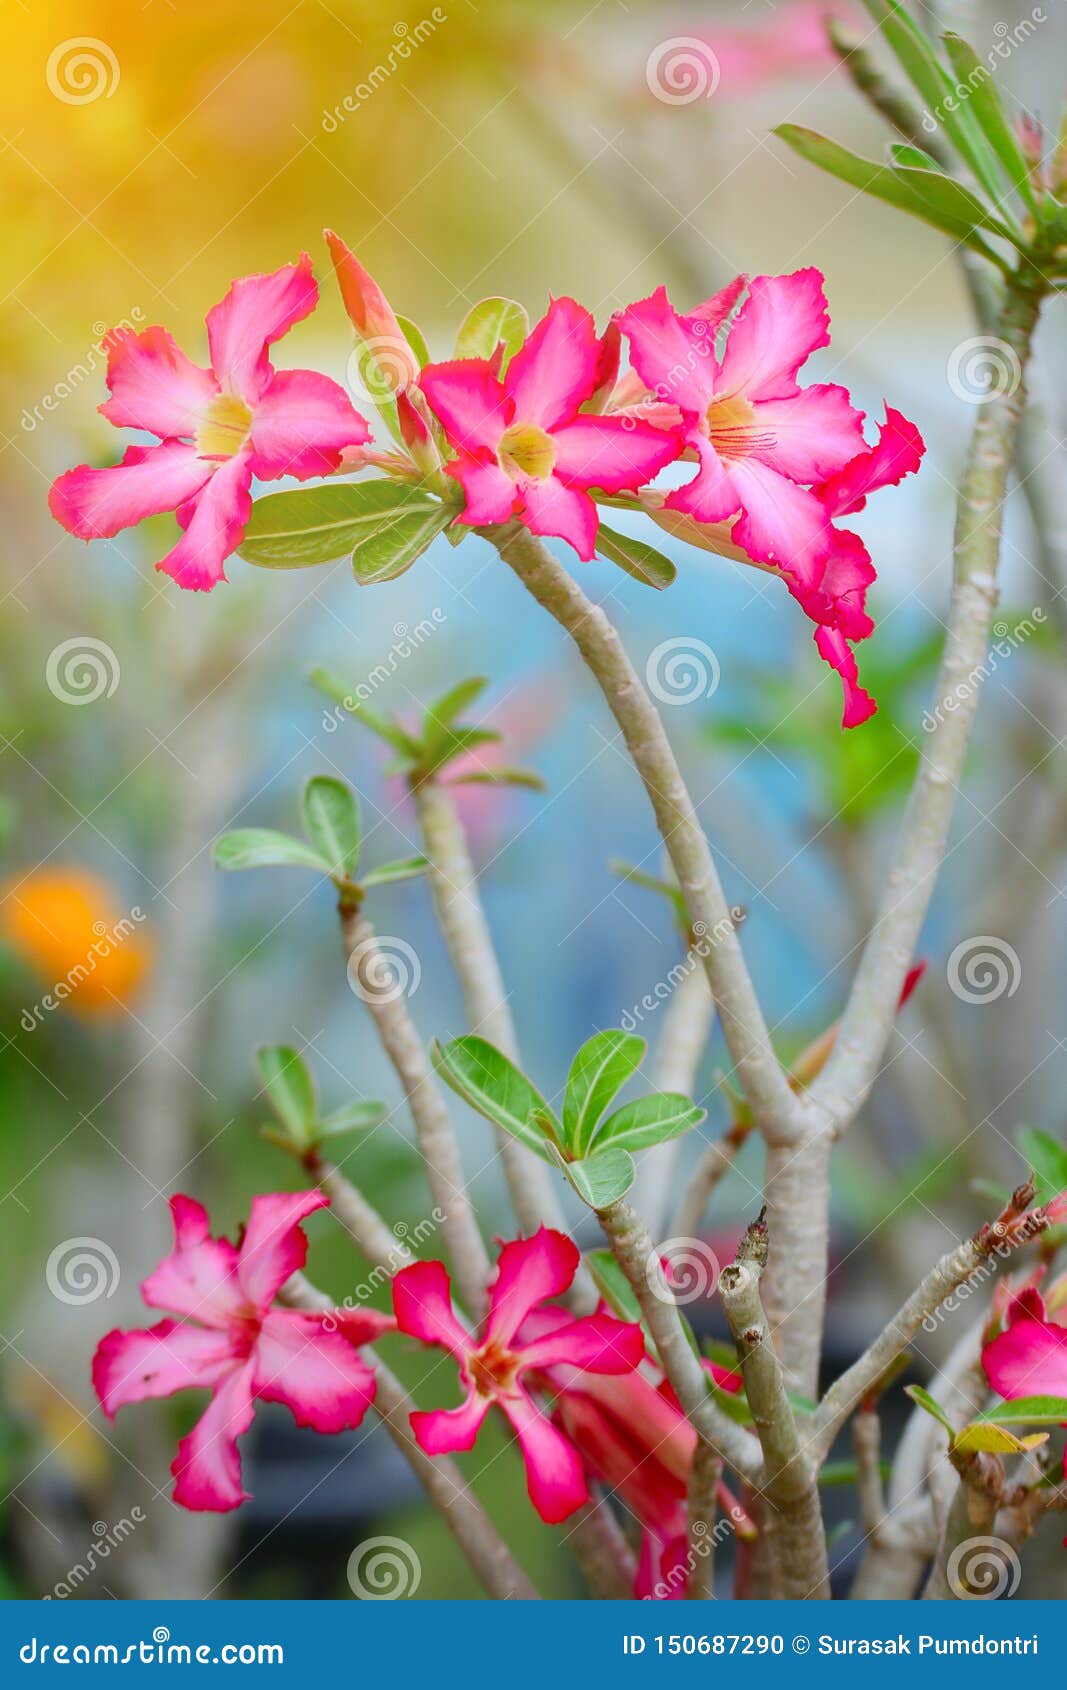 Nếu bạn là người yêu hoa, đặc biệt là loài hoa tuyệt đẹp Bignonia, hãy đến xem hình ảnh này! Bignonia là loài hoa tuyệt đẹp với màu sắc tươi sáng và hương thơm thật ngọt ngào. Hình ảnh này sẽ khiến bạn cảm thấy như đang đứng giữa một khu vườn hoa tự nhiên.